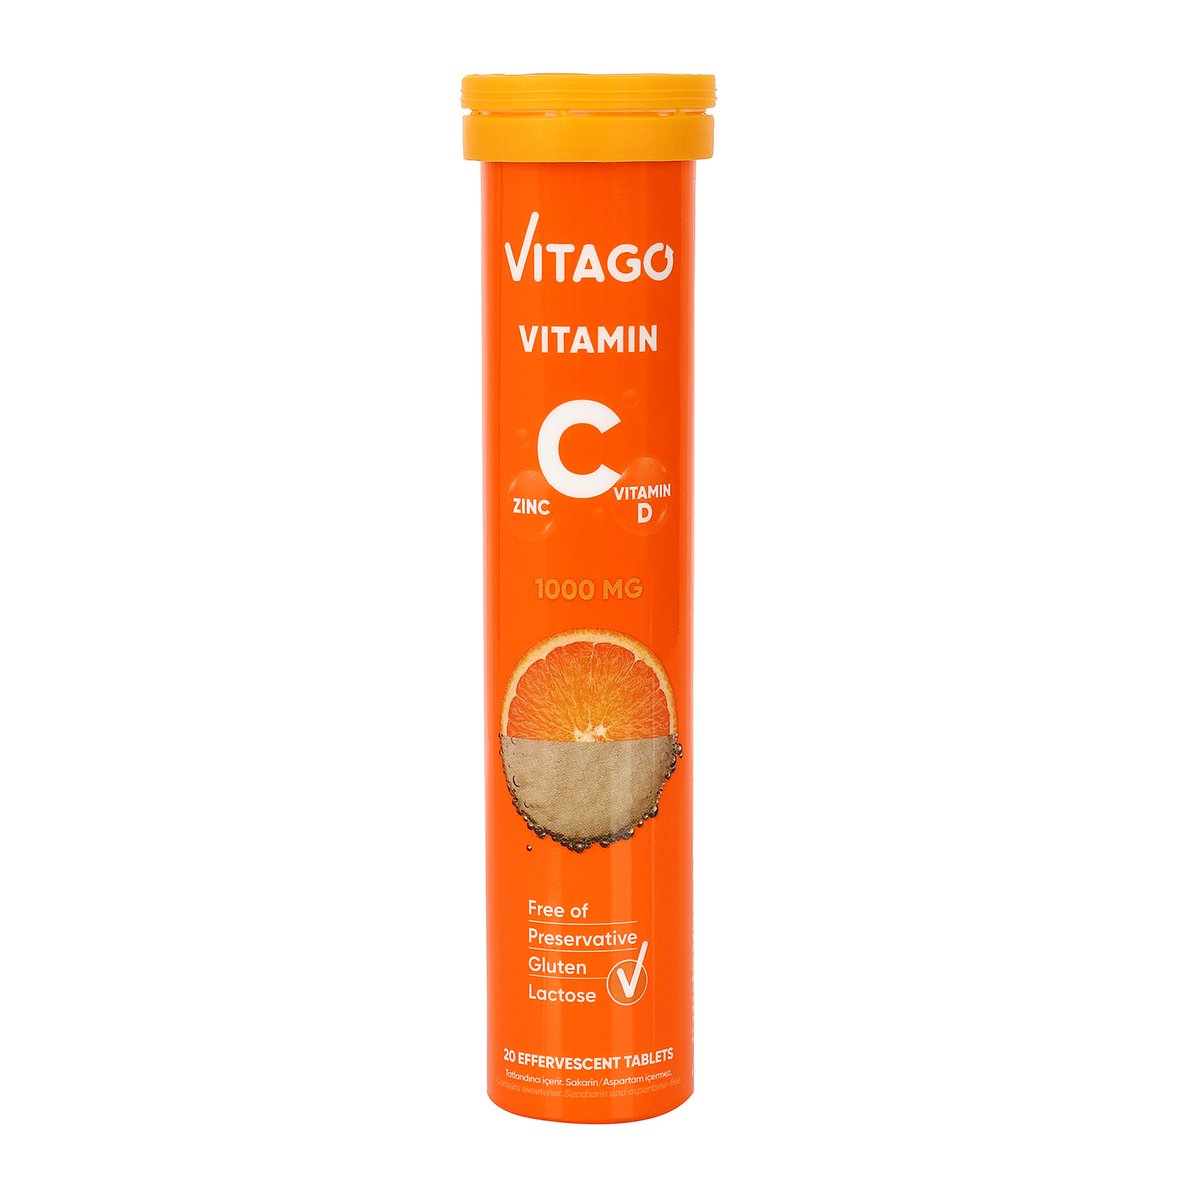 Vitago Vitamin C & D 1000mg 20 pcs